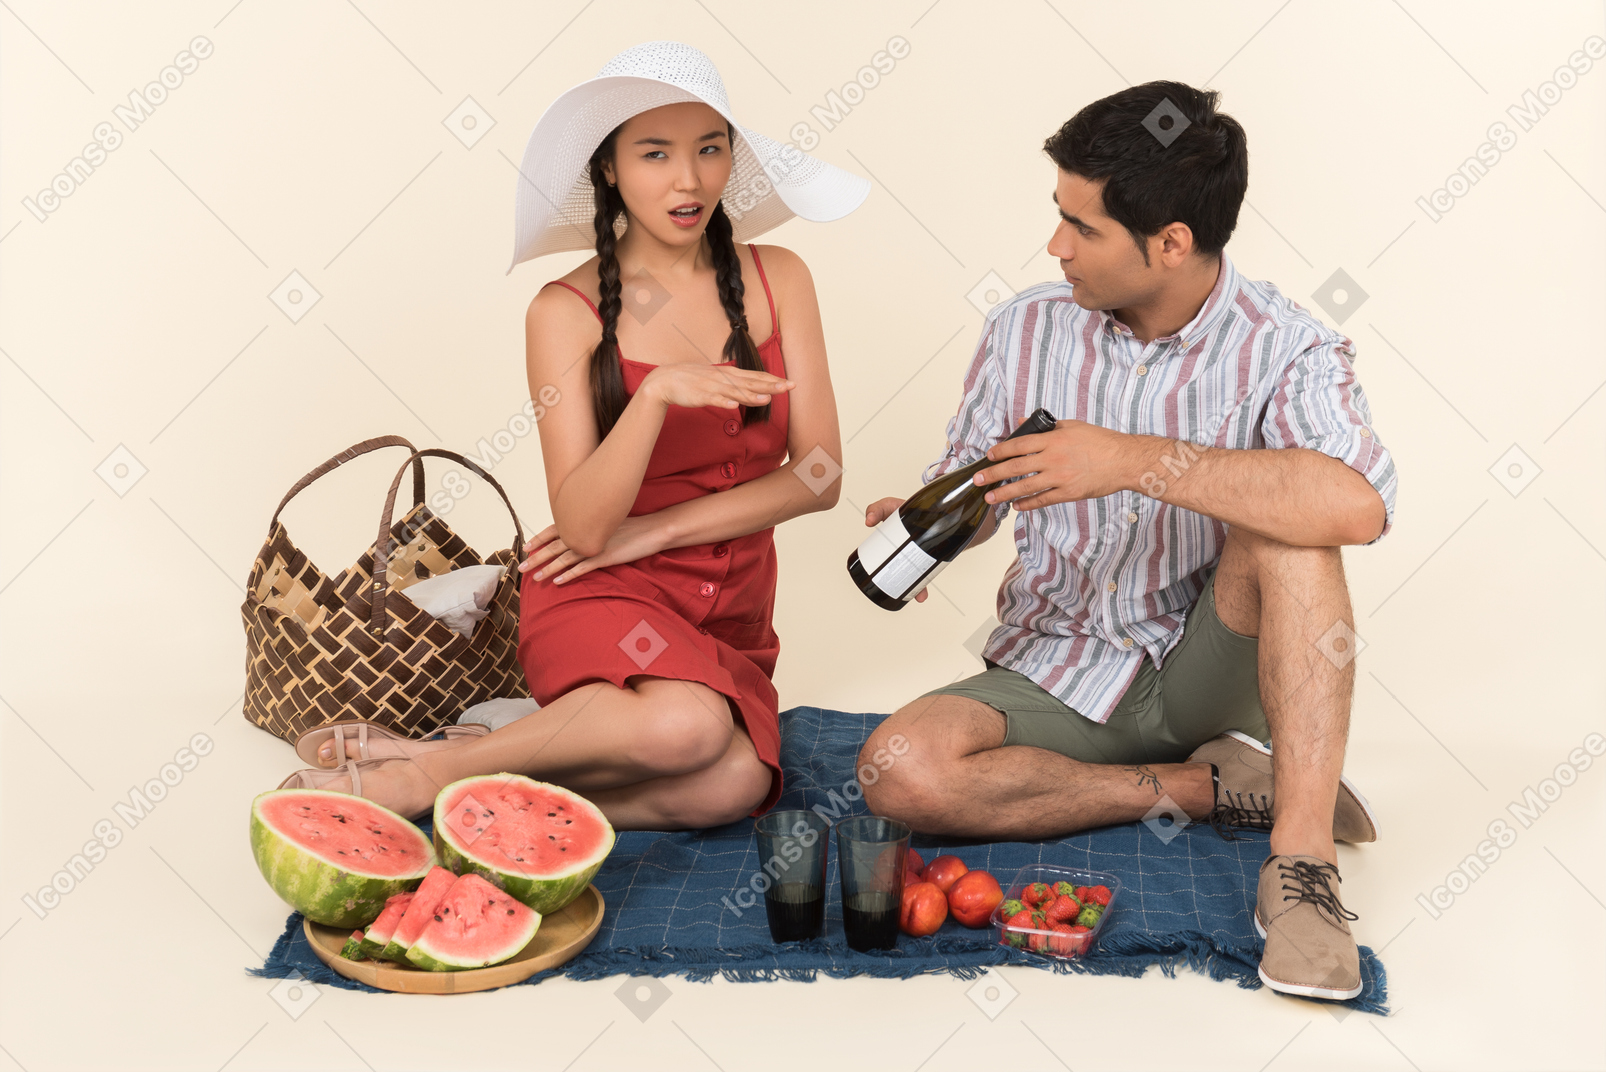 Chico joven que muestra una botella de vino en un picnic a una mujer que parece indignada